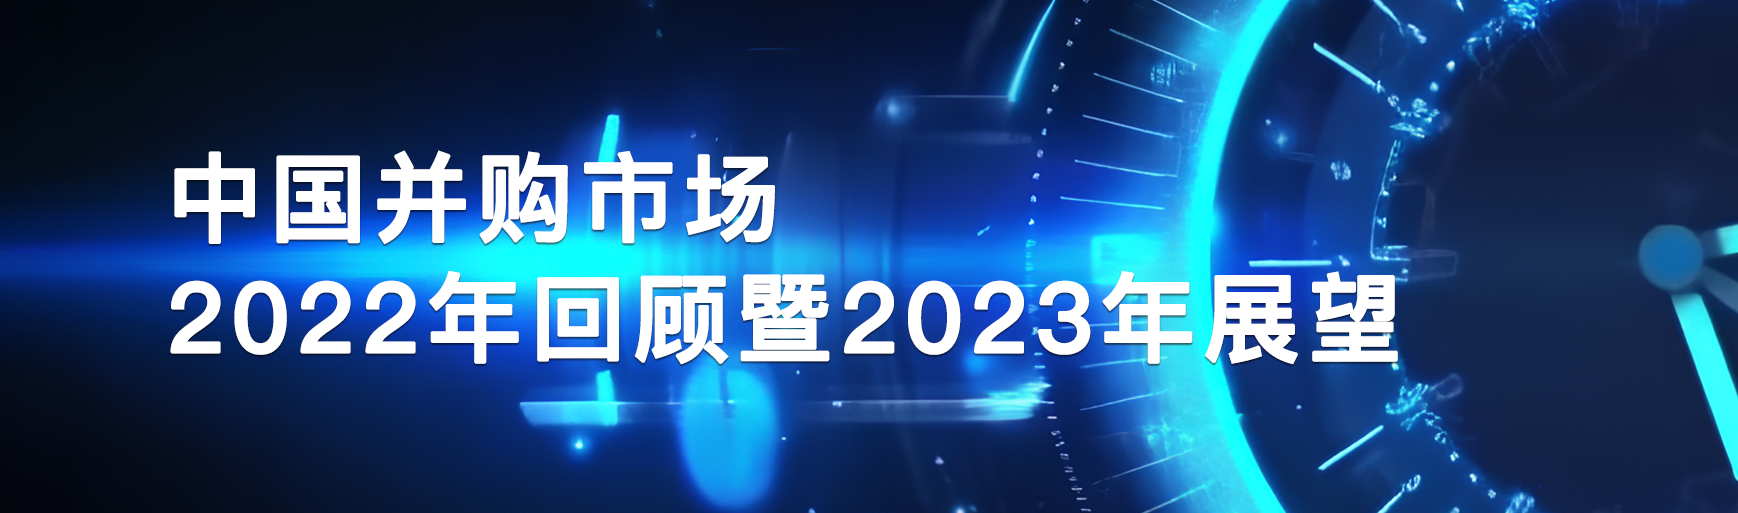 中国并购市场2022年回顾暨2023年展望